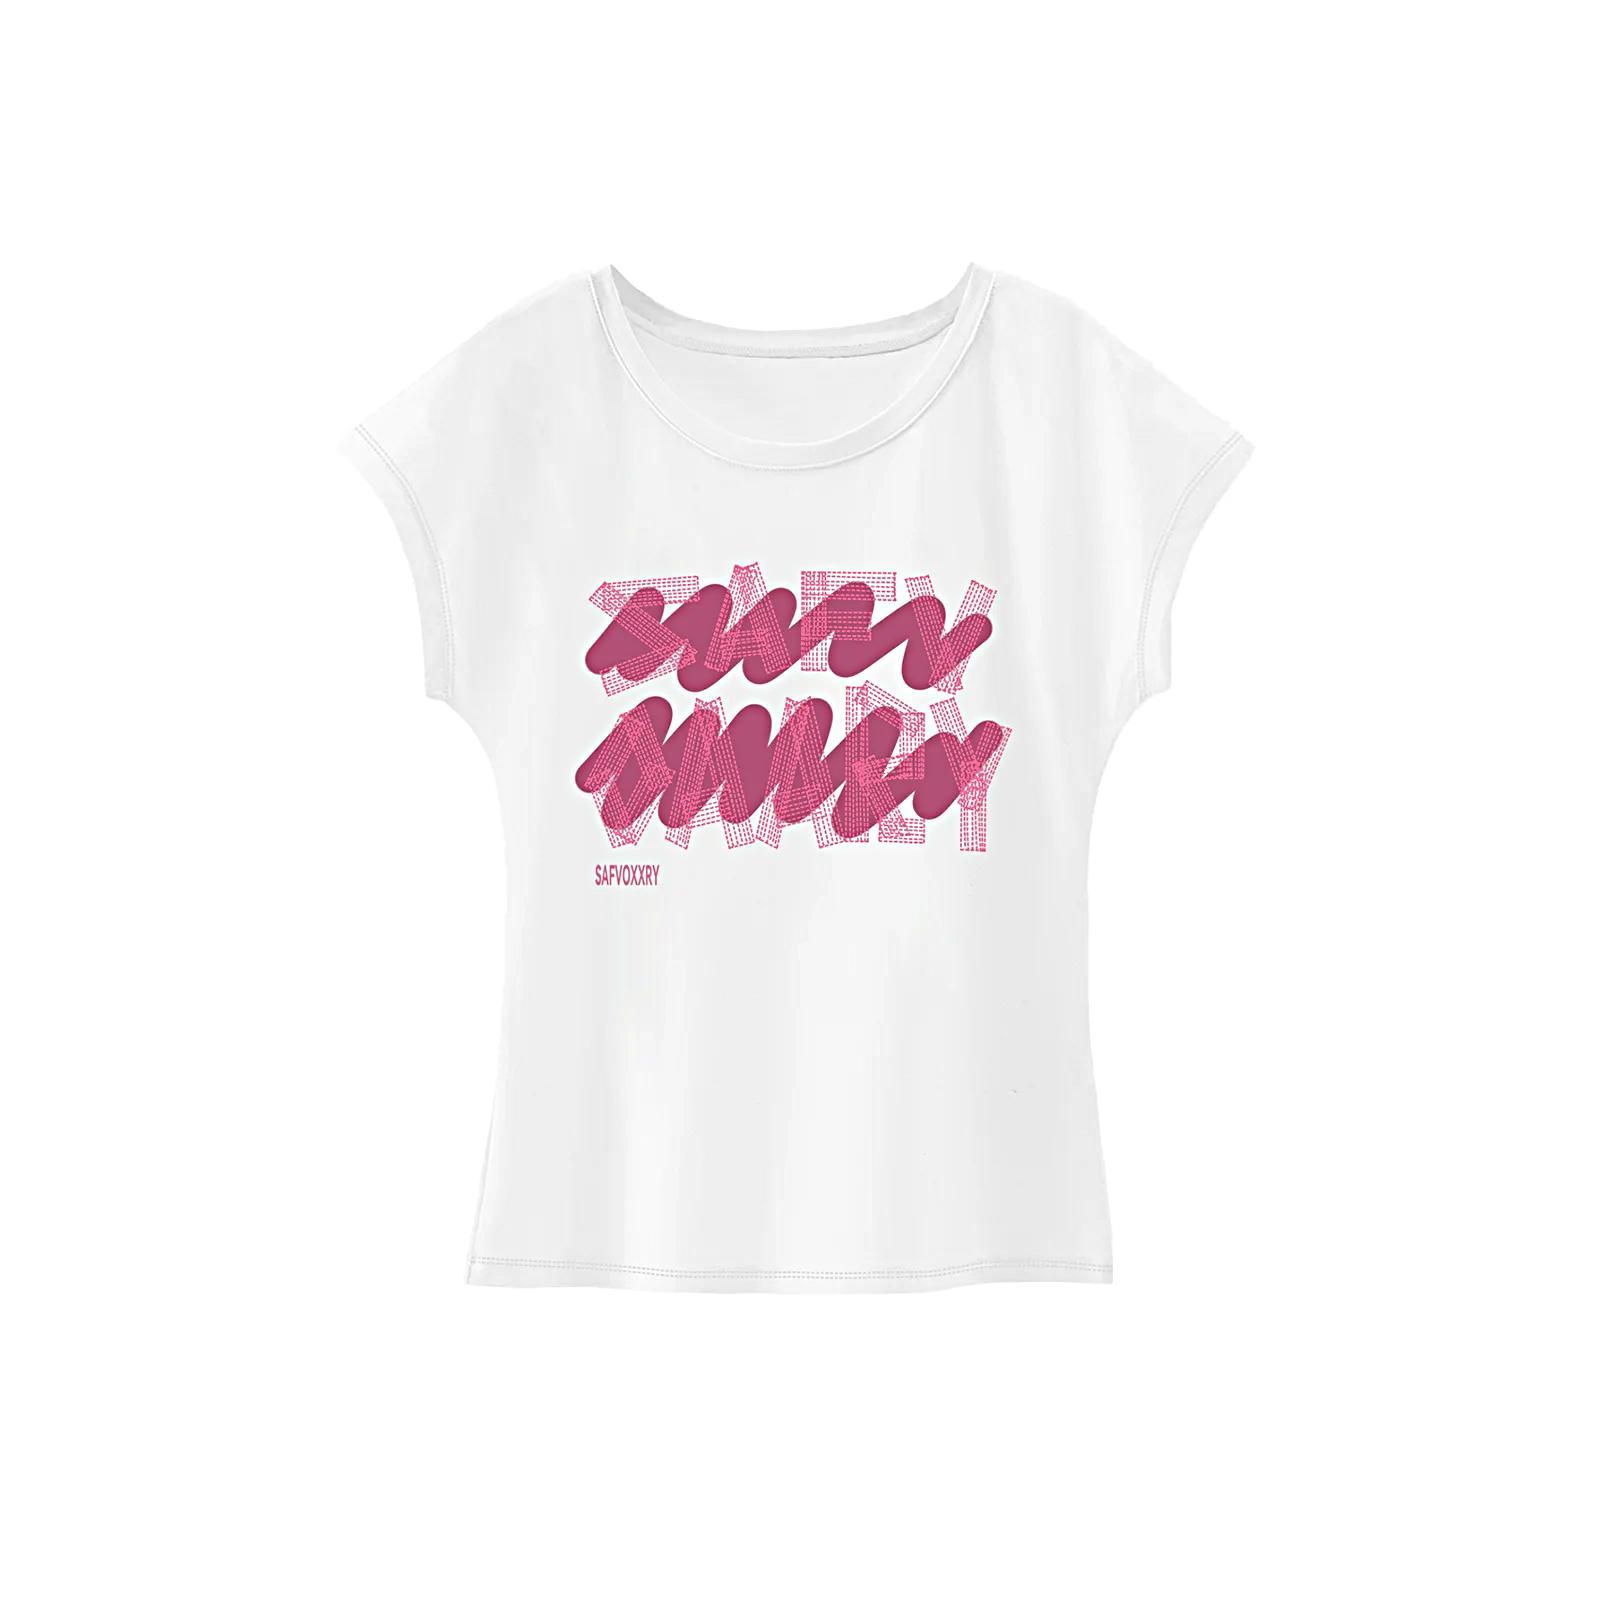 Women's T Shirt Summer Soft Sportswear Crewneck Shirt for Walking Beach Work XL